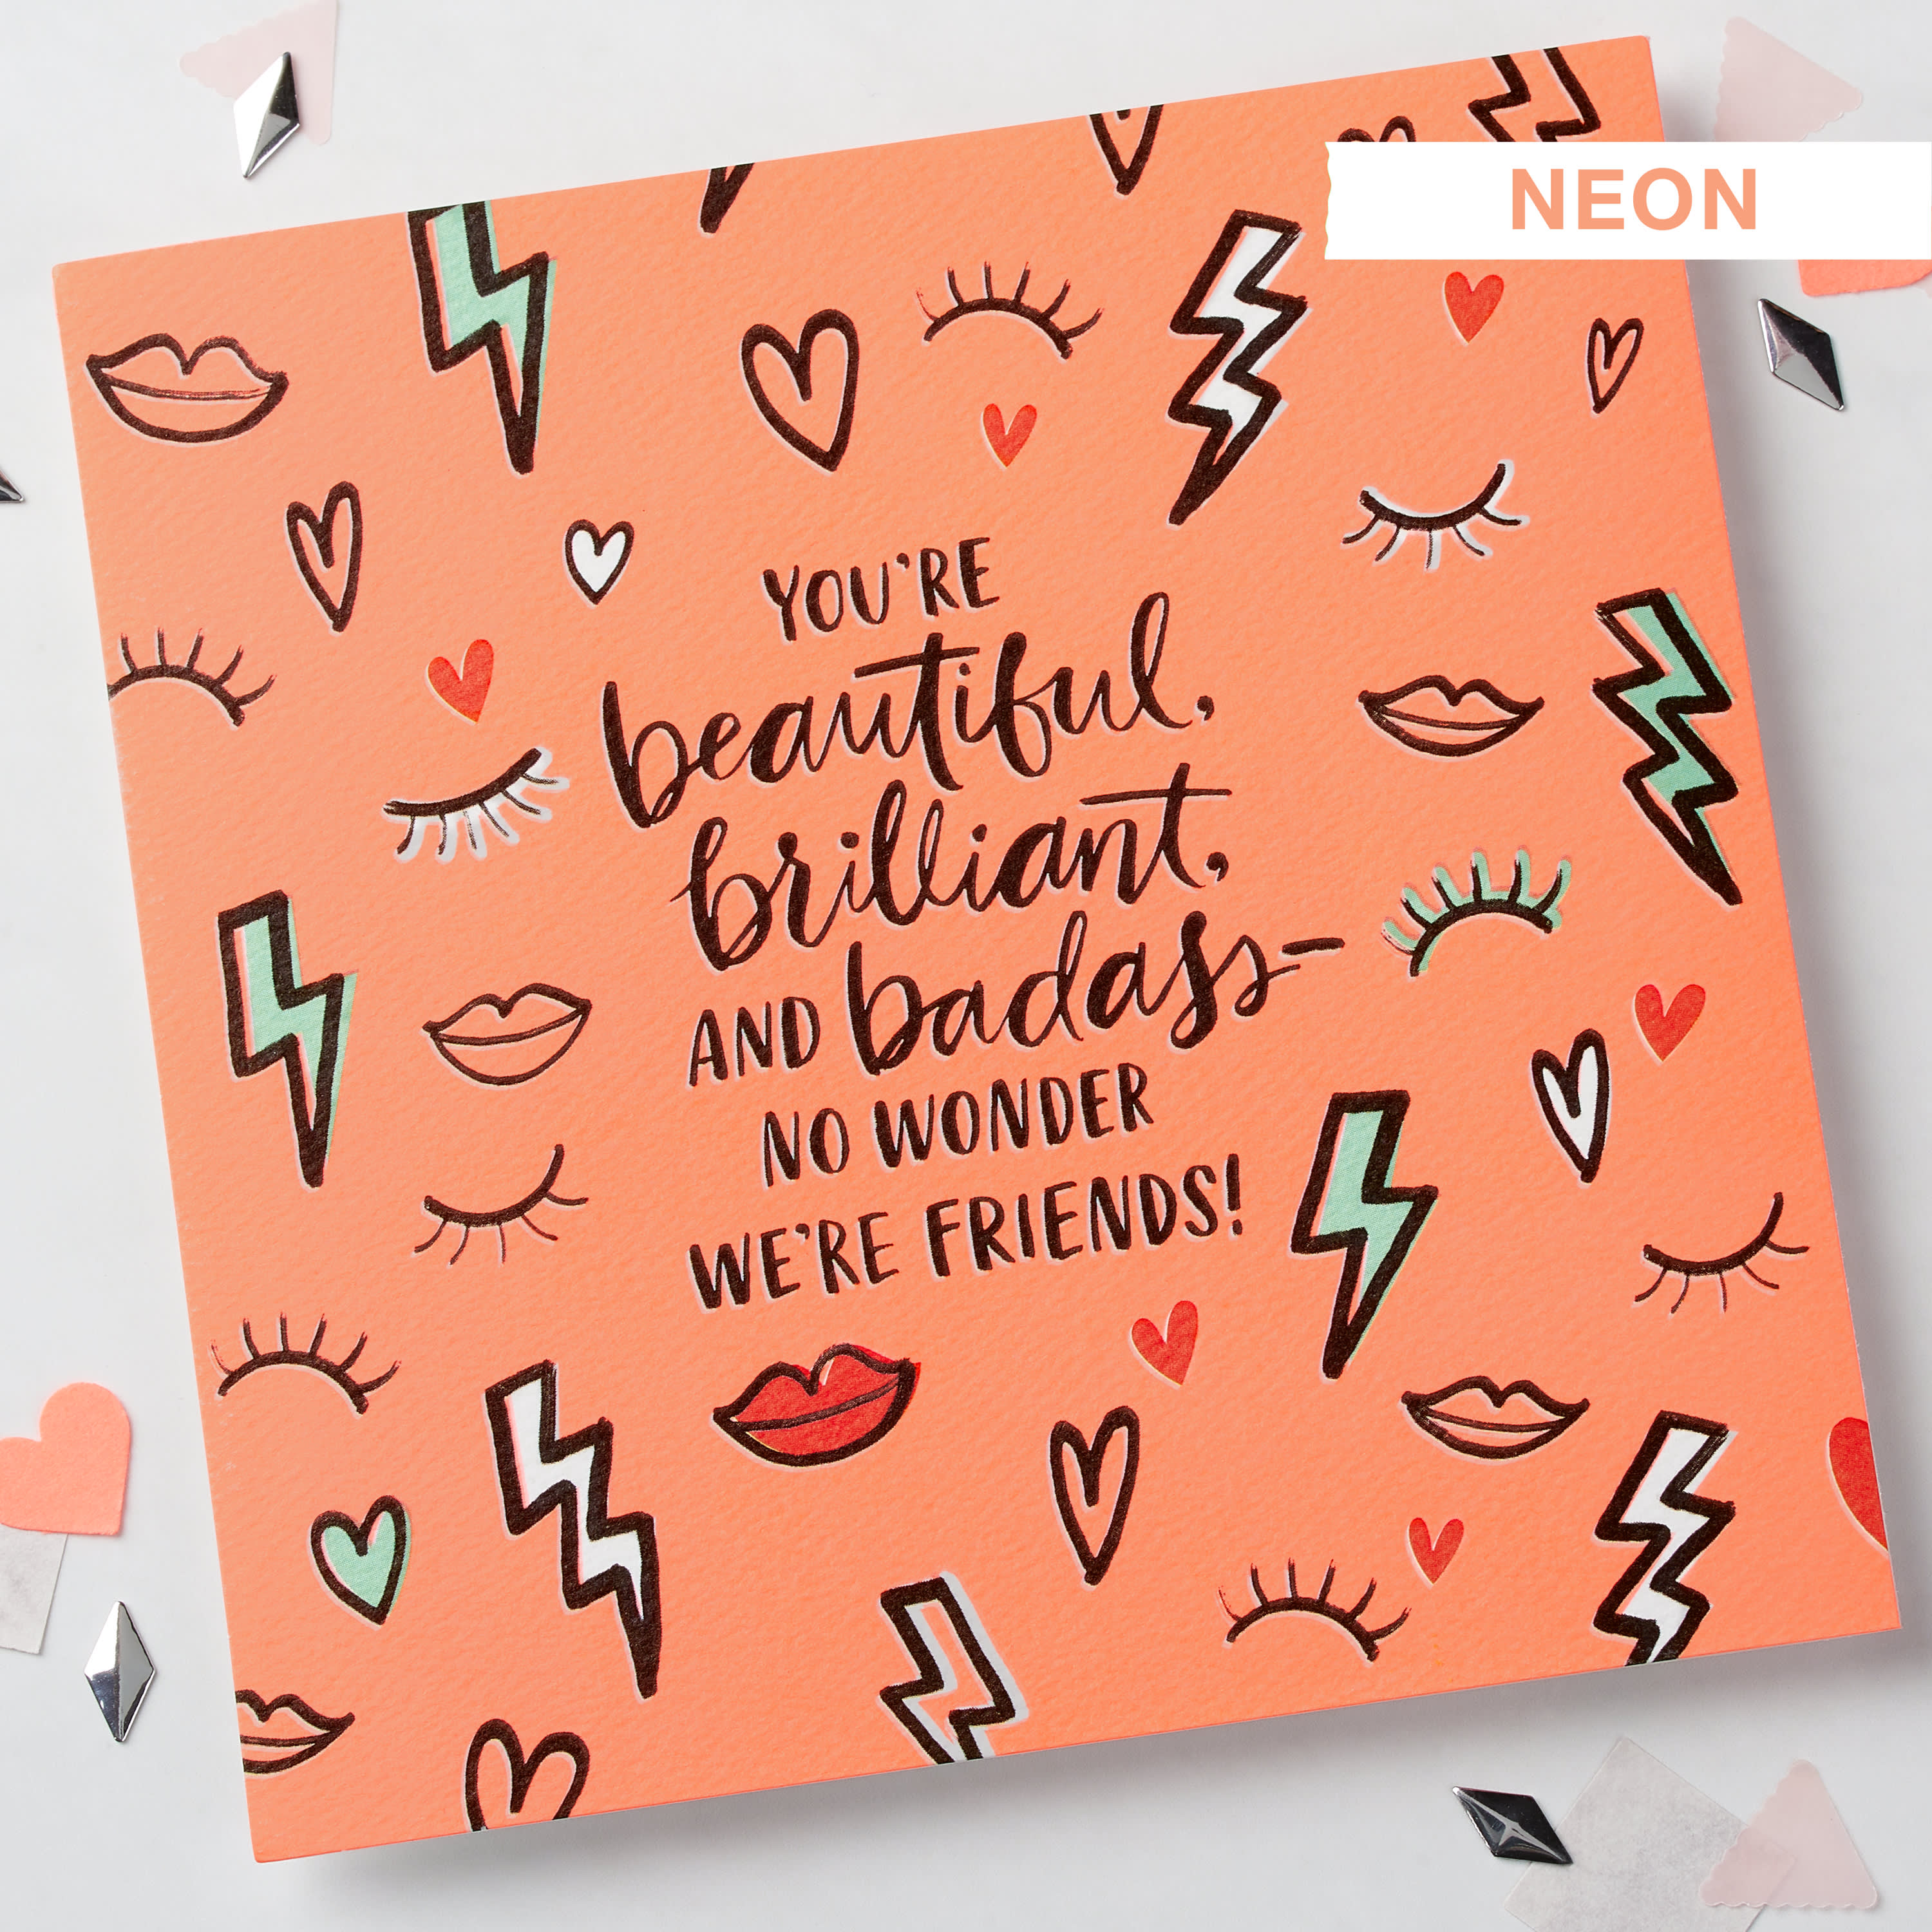 Badass Valentine's Day Card for Friend image